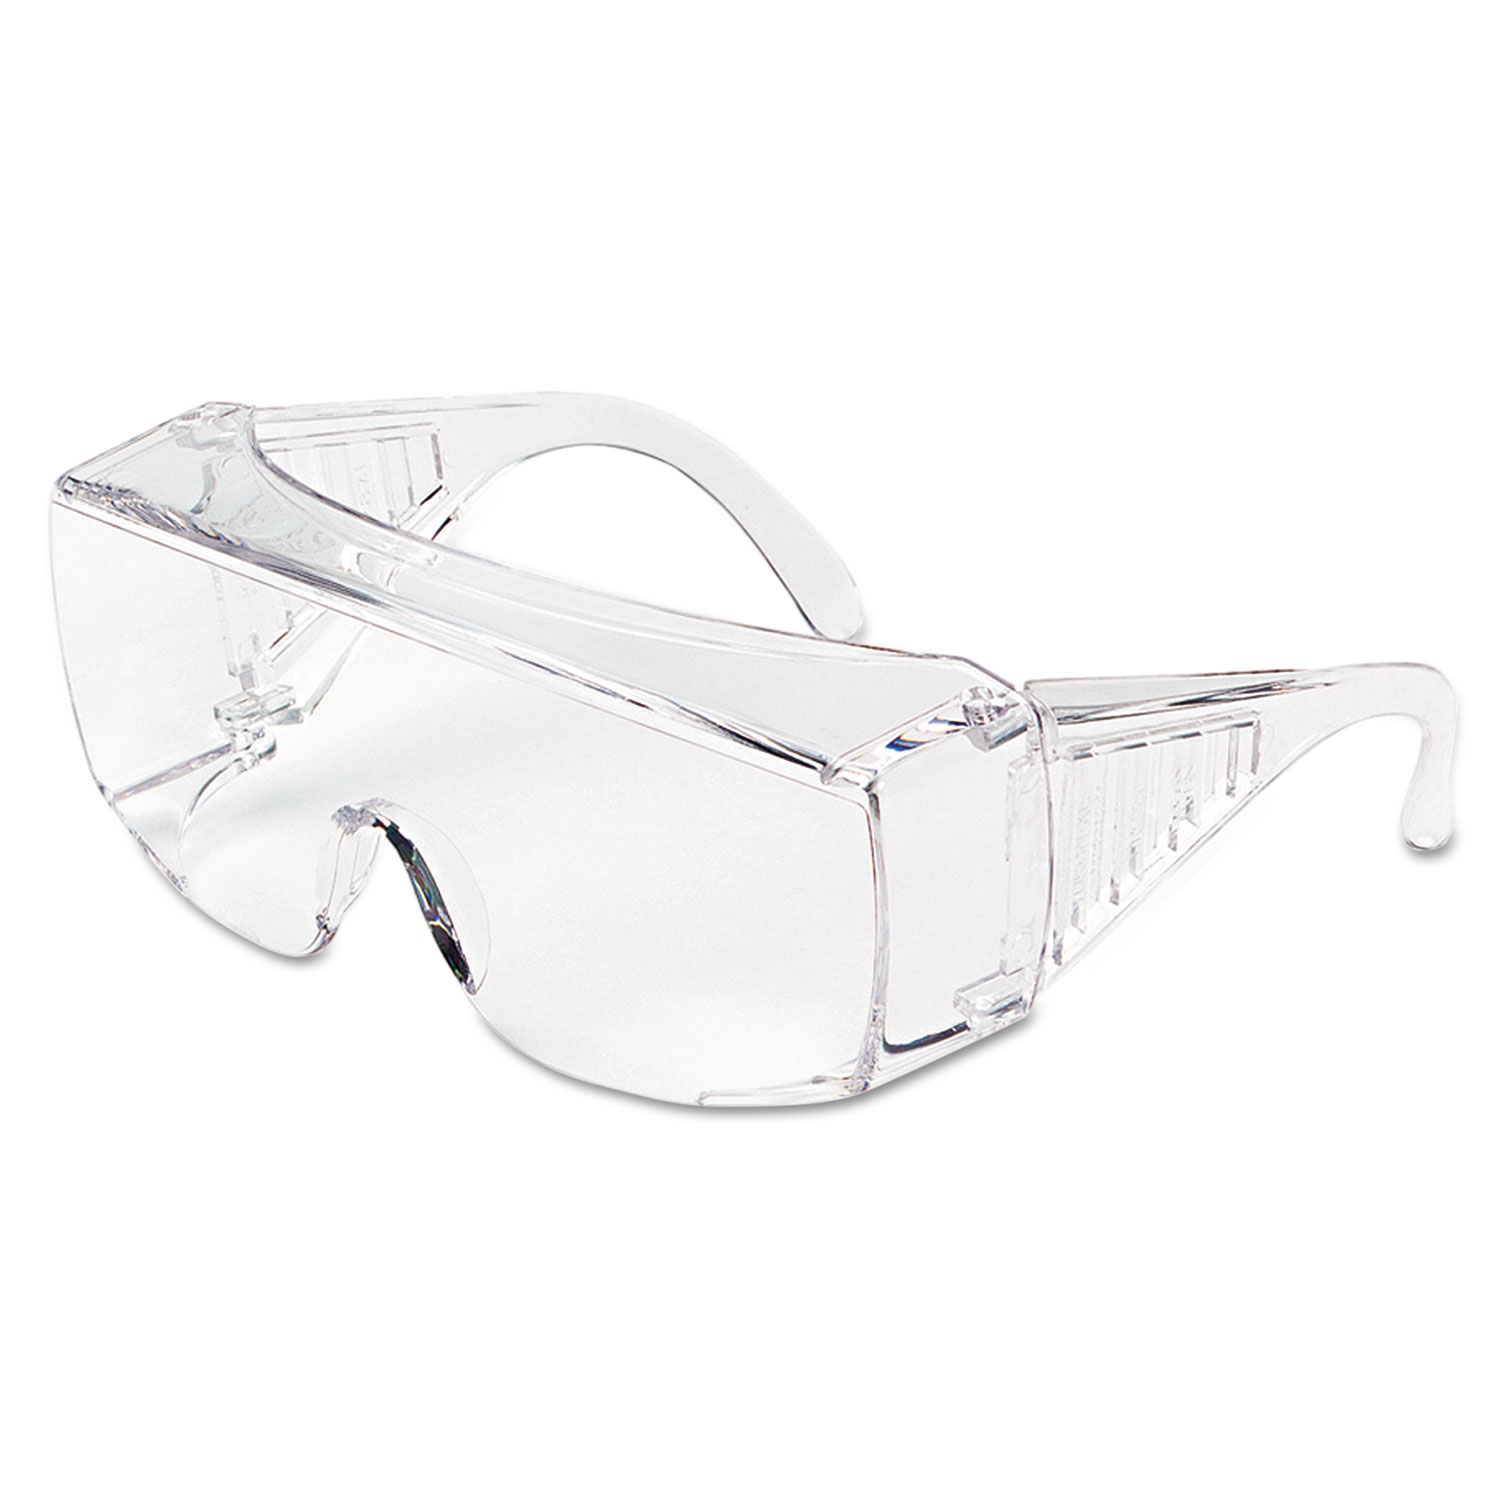 Yukon Uncoated Protective Eyewear, Clear, X-Large